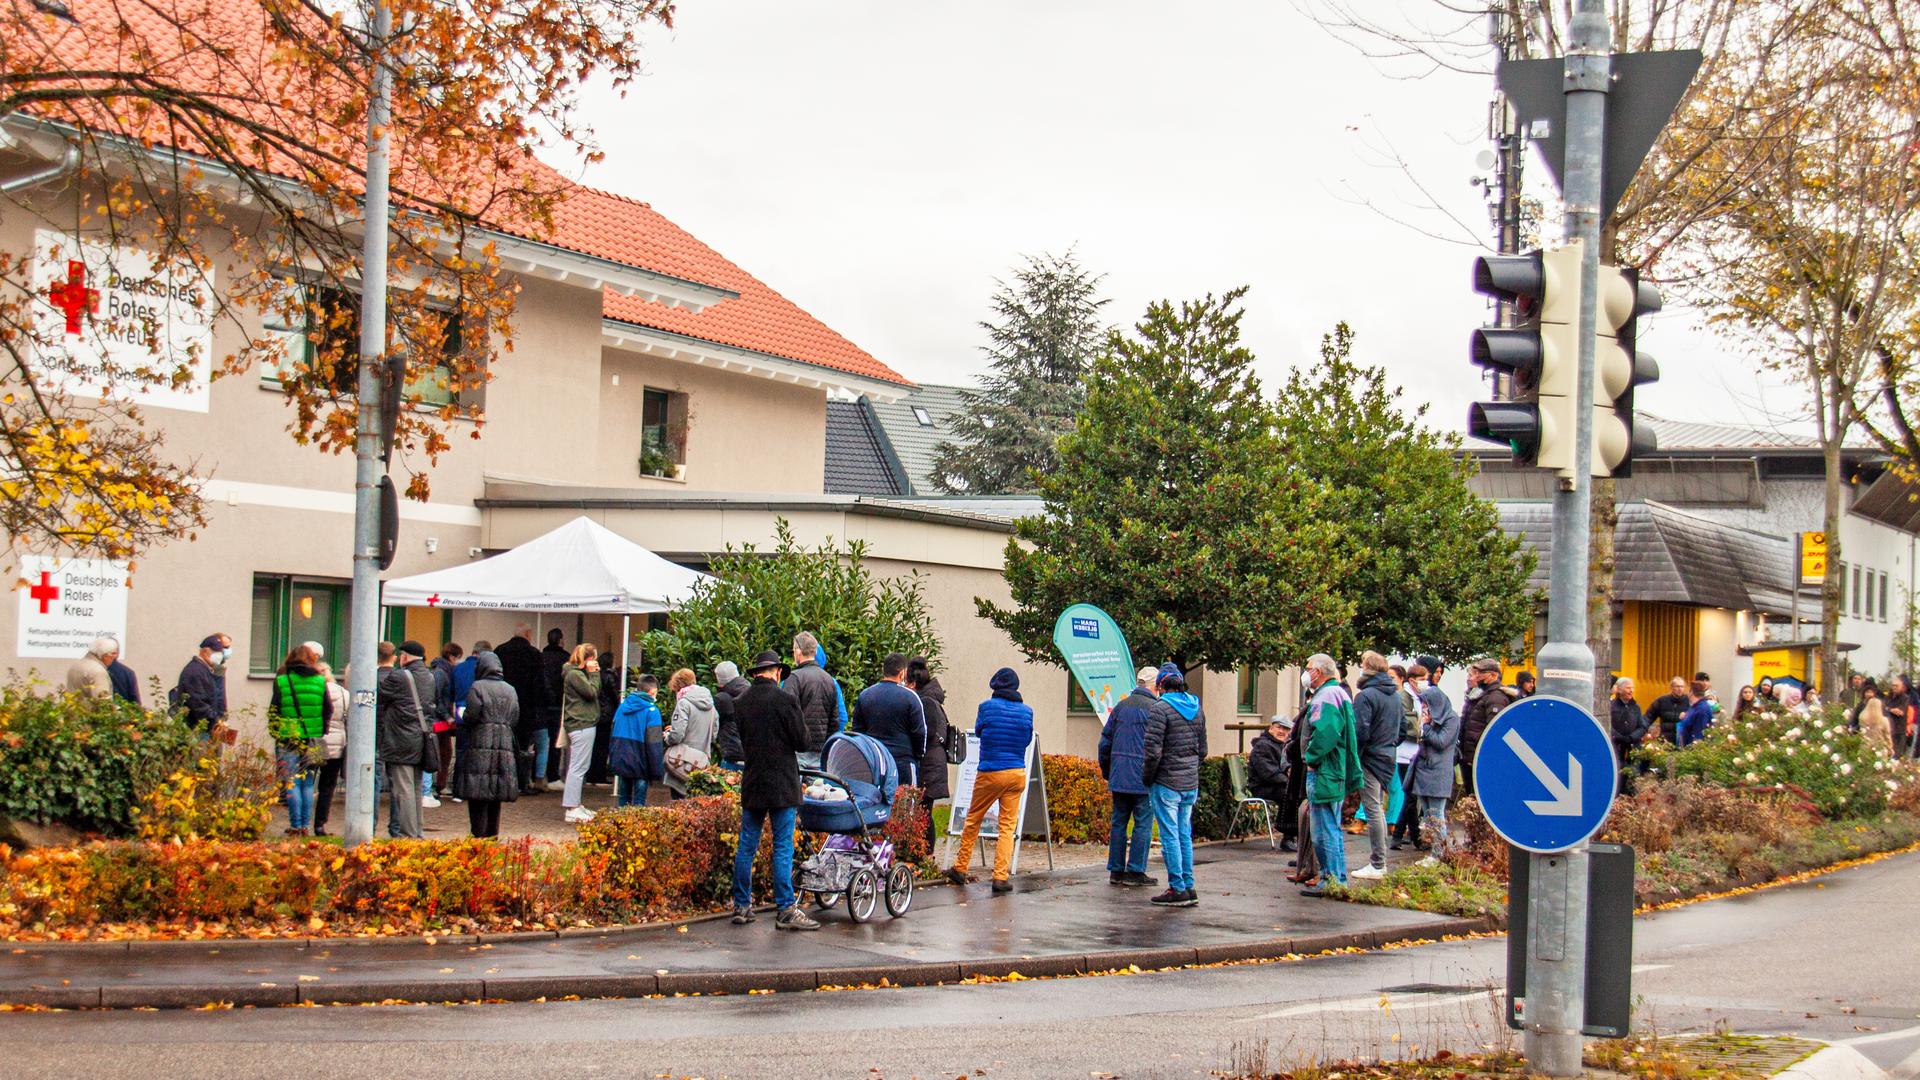 Einige hundert Menschen waren am Samstag dem Impfangebot des Deutschen Roten Kreuzes in Oberkirch gefolgt. Teilweise nahmen sie bis zu zwei Stunden Schlange stehen im Regen in Kauf, um sich gegen Covid 19 zu schützen. Foto: Michael Brück 